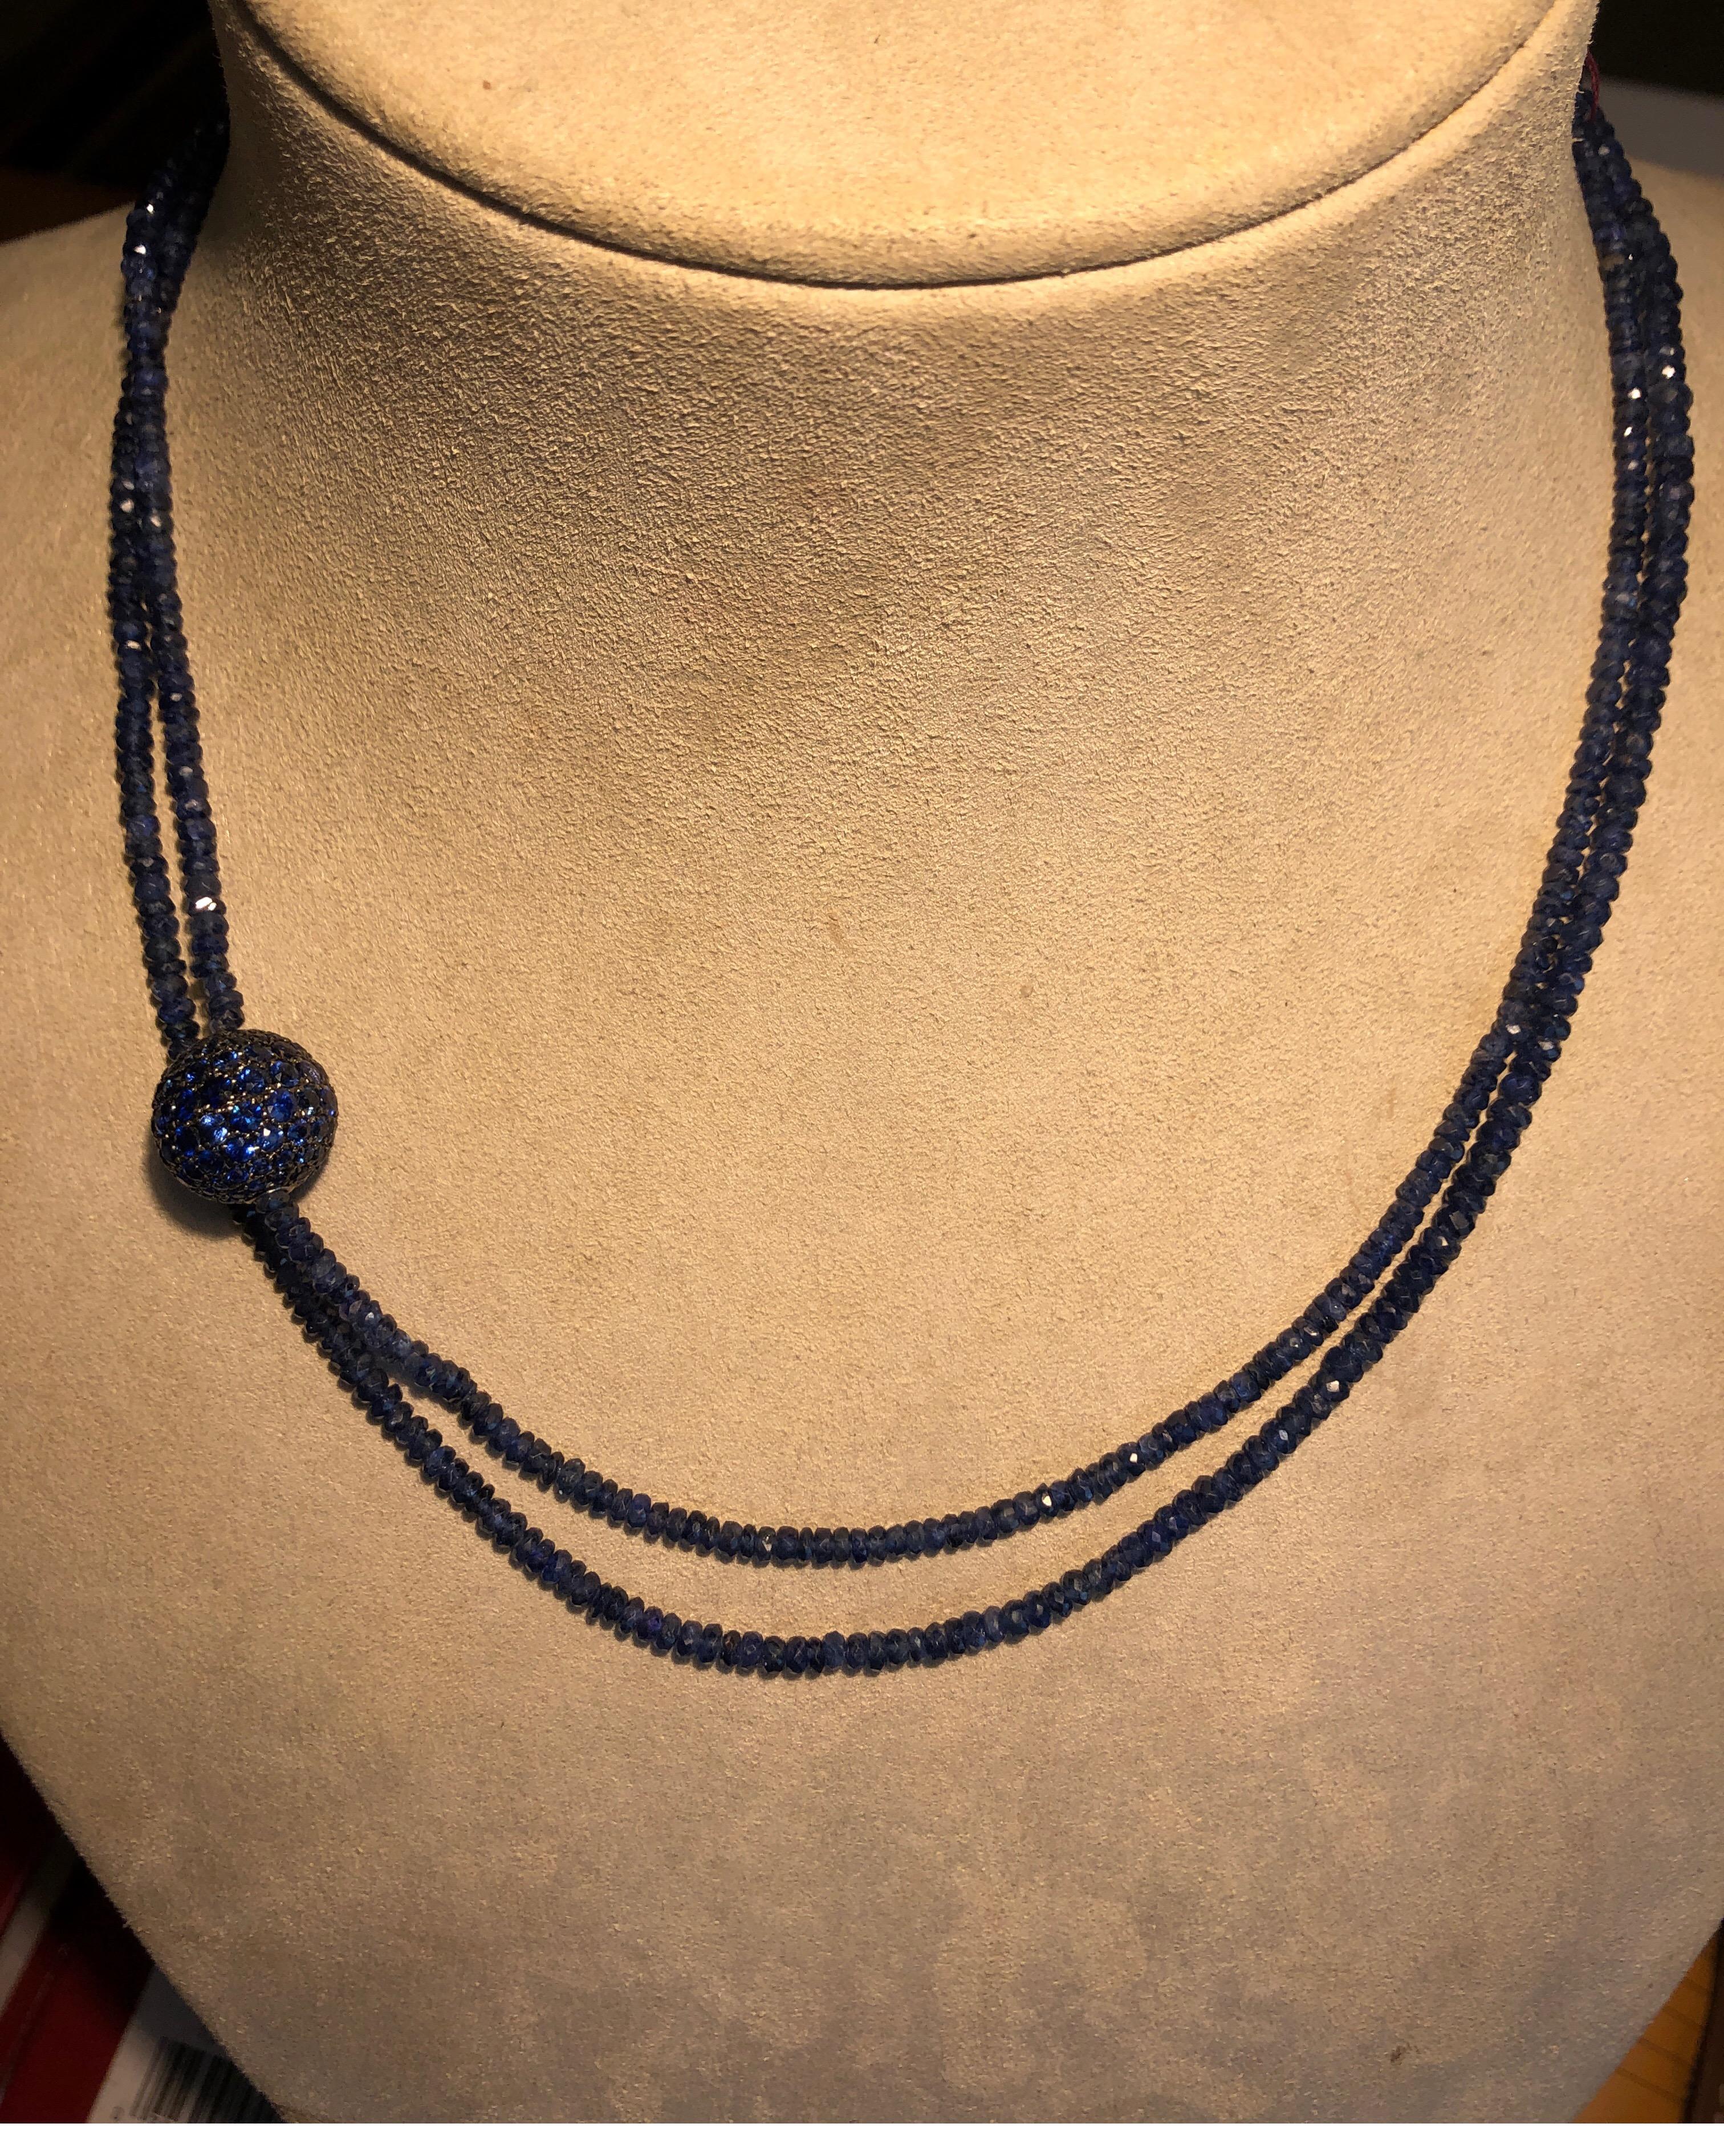 18K Weißgold Halskette mit rauen blauen Saphir Perlen und blauen Saphir dekorative 13mm Kugel, kann lang oder verdoppelt getragen werden, 38 Zoll lang.
Letzter Verkauf $8000